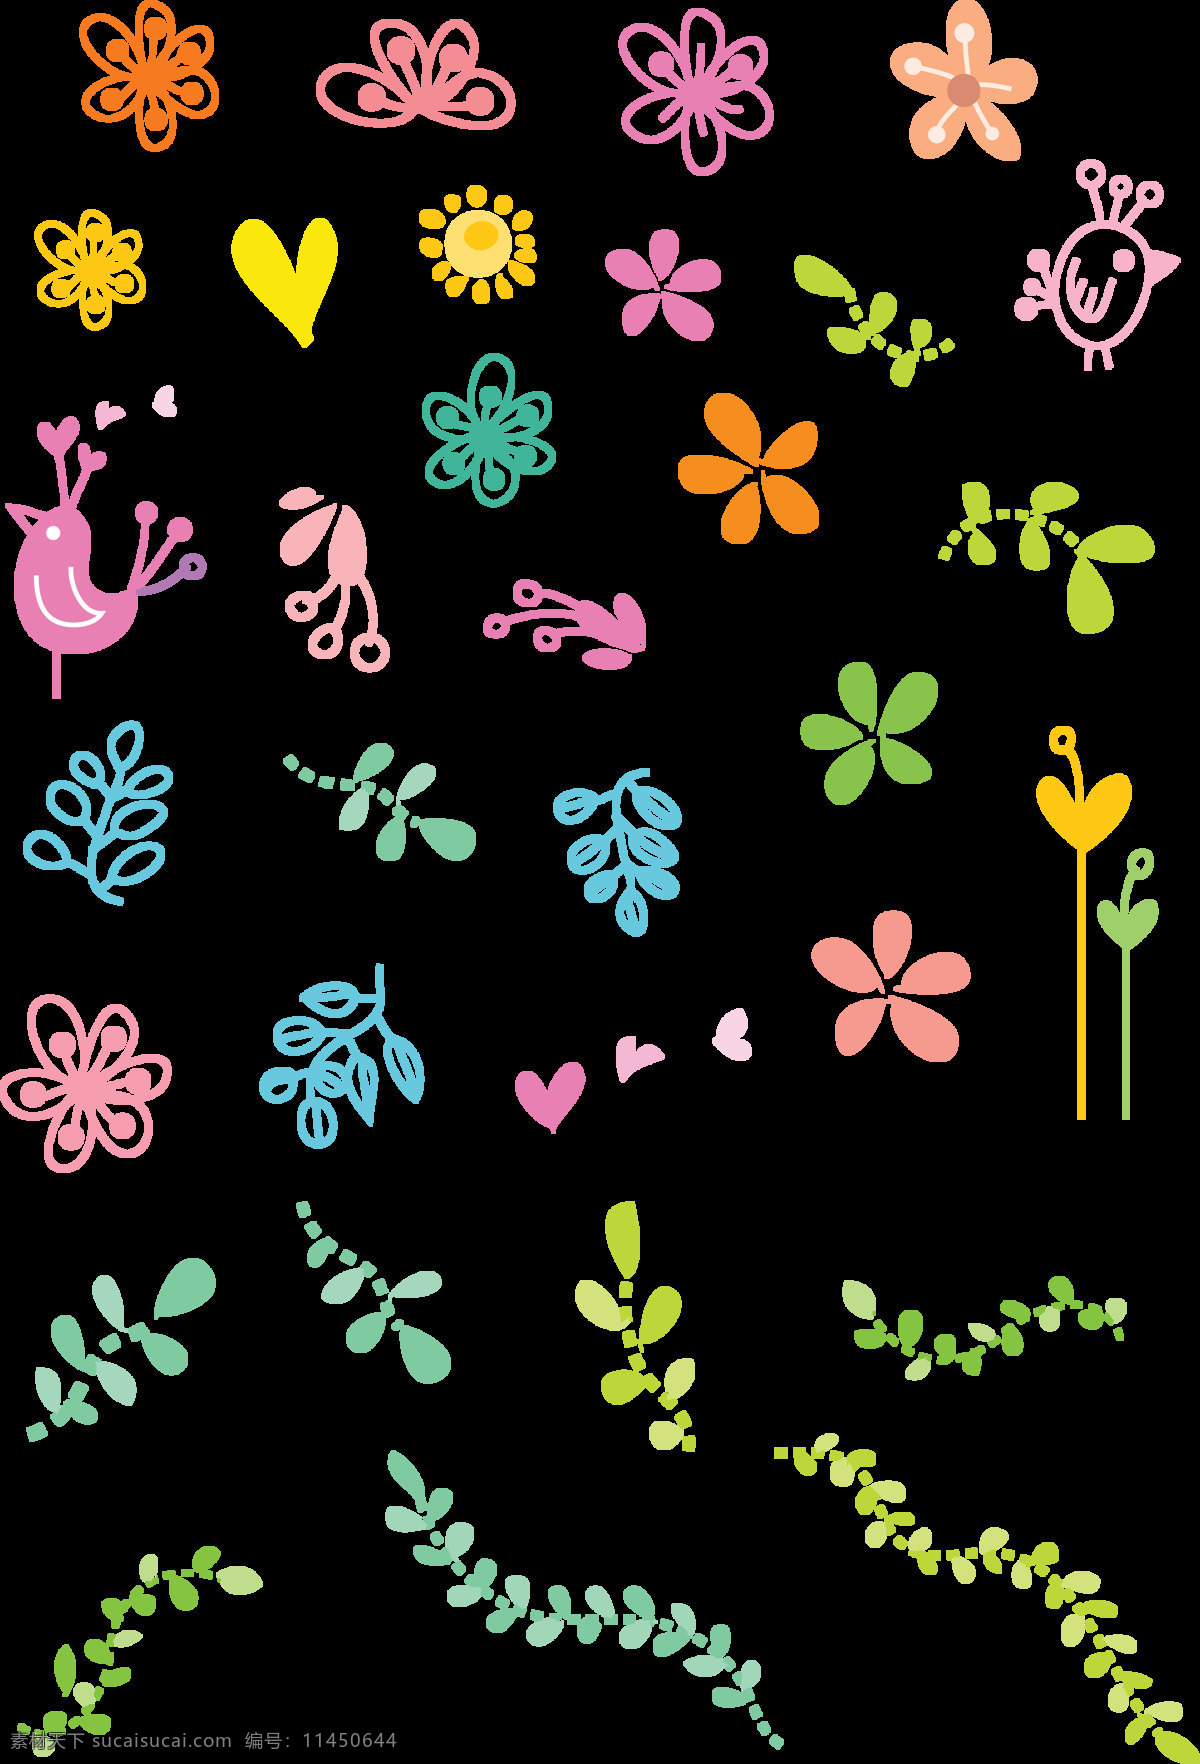 爱心 底纹边框 花边花纹 花朵 花纹 花纹图案 可爱 绿叶 鸟儿 图案 设计素材 模板下载 植物 小花 太阳 矢量图 花纹花边